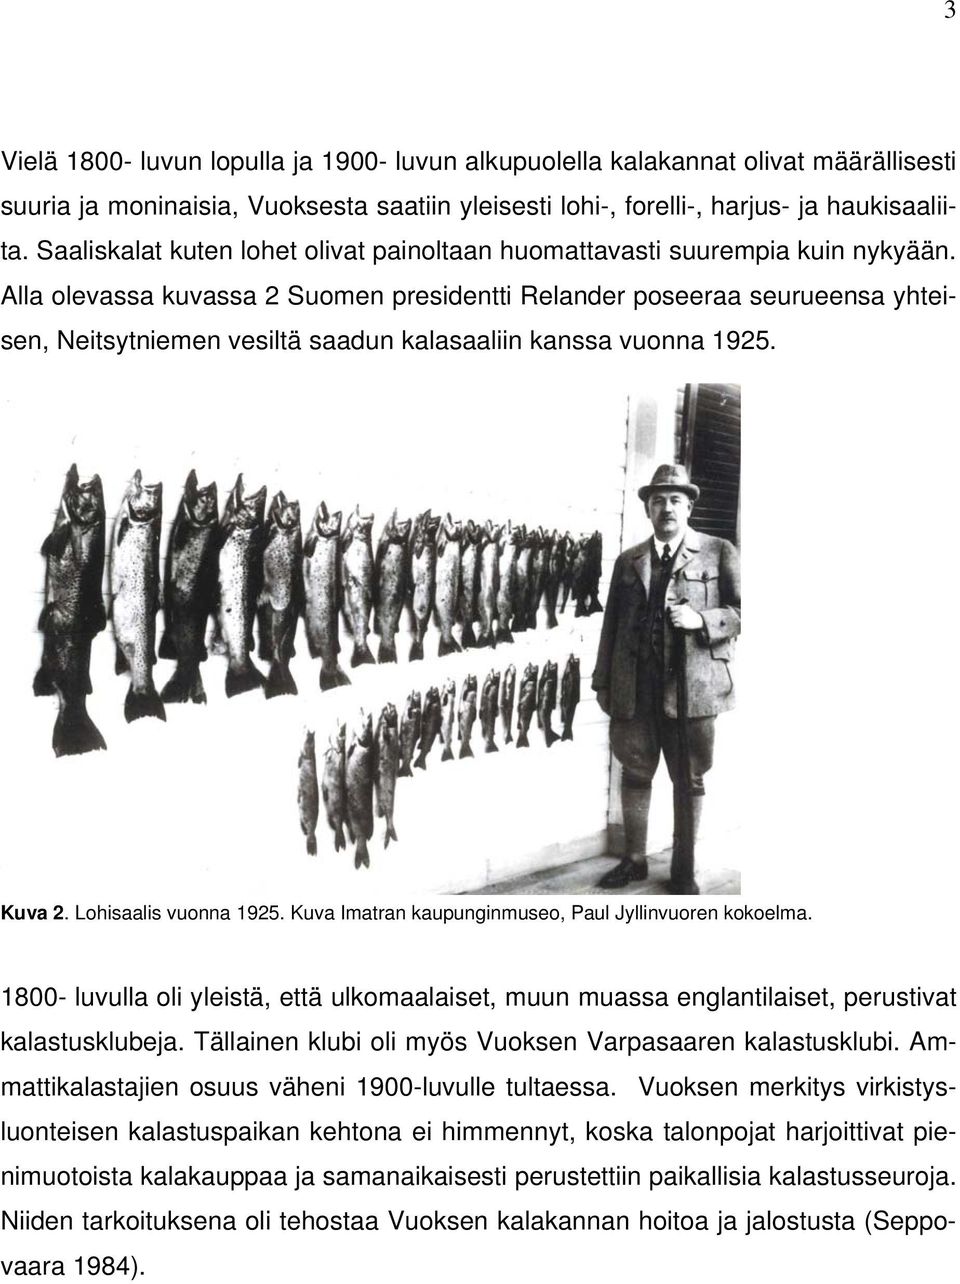 Alla olevassa kuvassa 2 Suomen presidentti Relander poseeraa seurueensa yhteisen, Neitsytniemen vesiltä saadun kalasaaliin kanssa vuonna 1925. Kuva 2. Lohisaalis vuonna 1925.